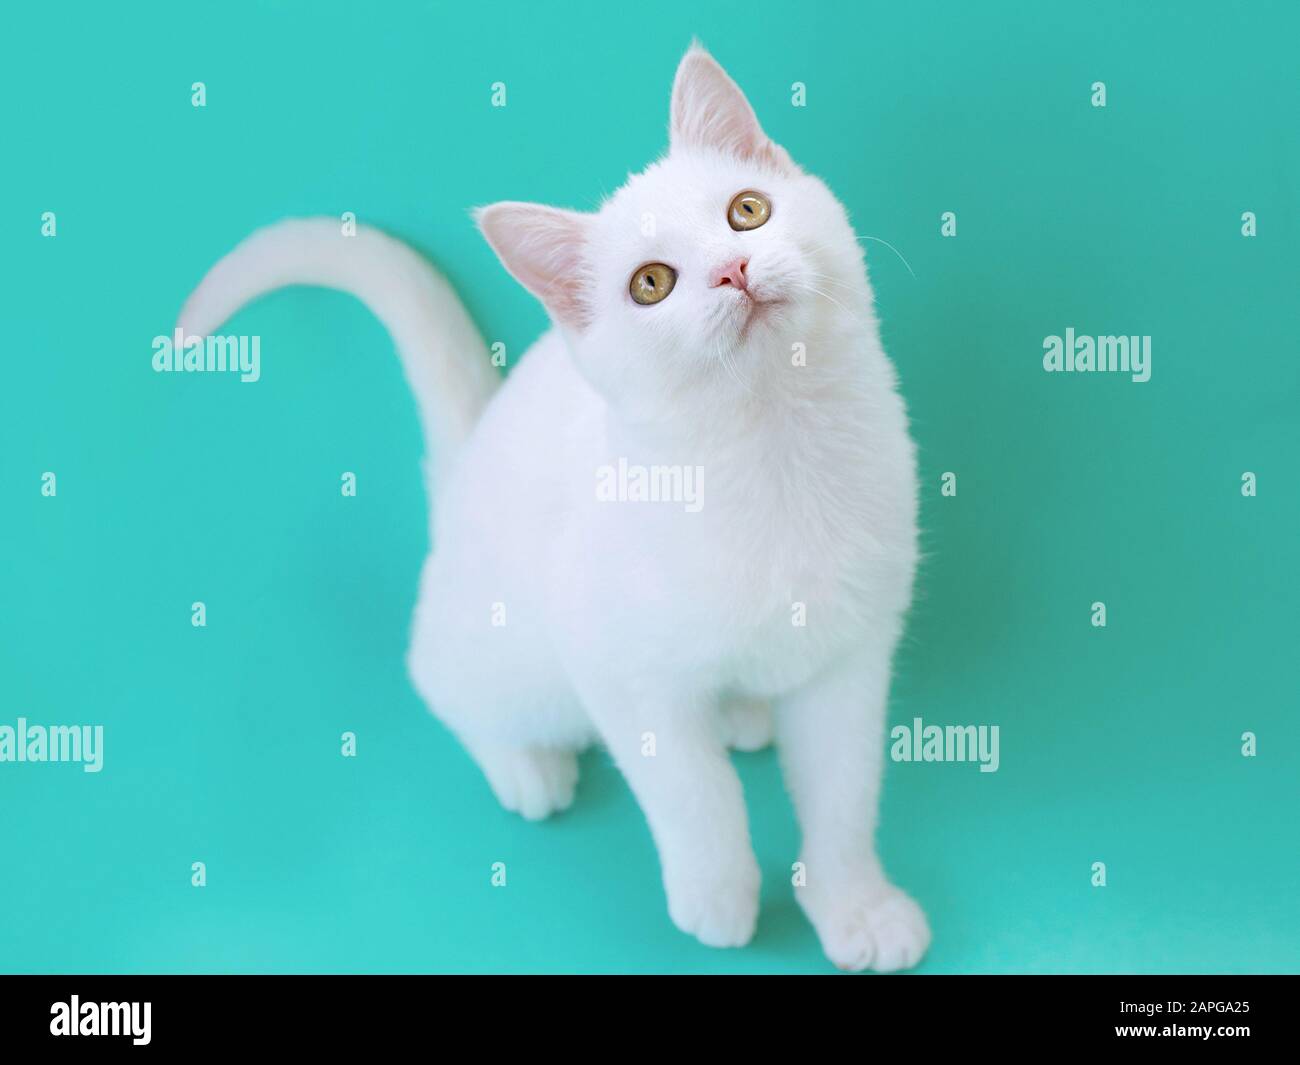 Joli chat blanc curieux sur fond de couleur menthol. Ami, animal de compagnie, allergie, concept de solitude Banque D'Images